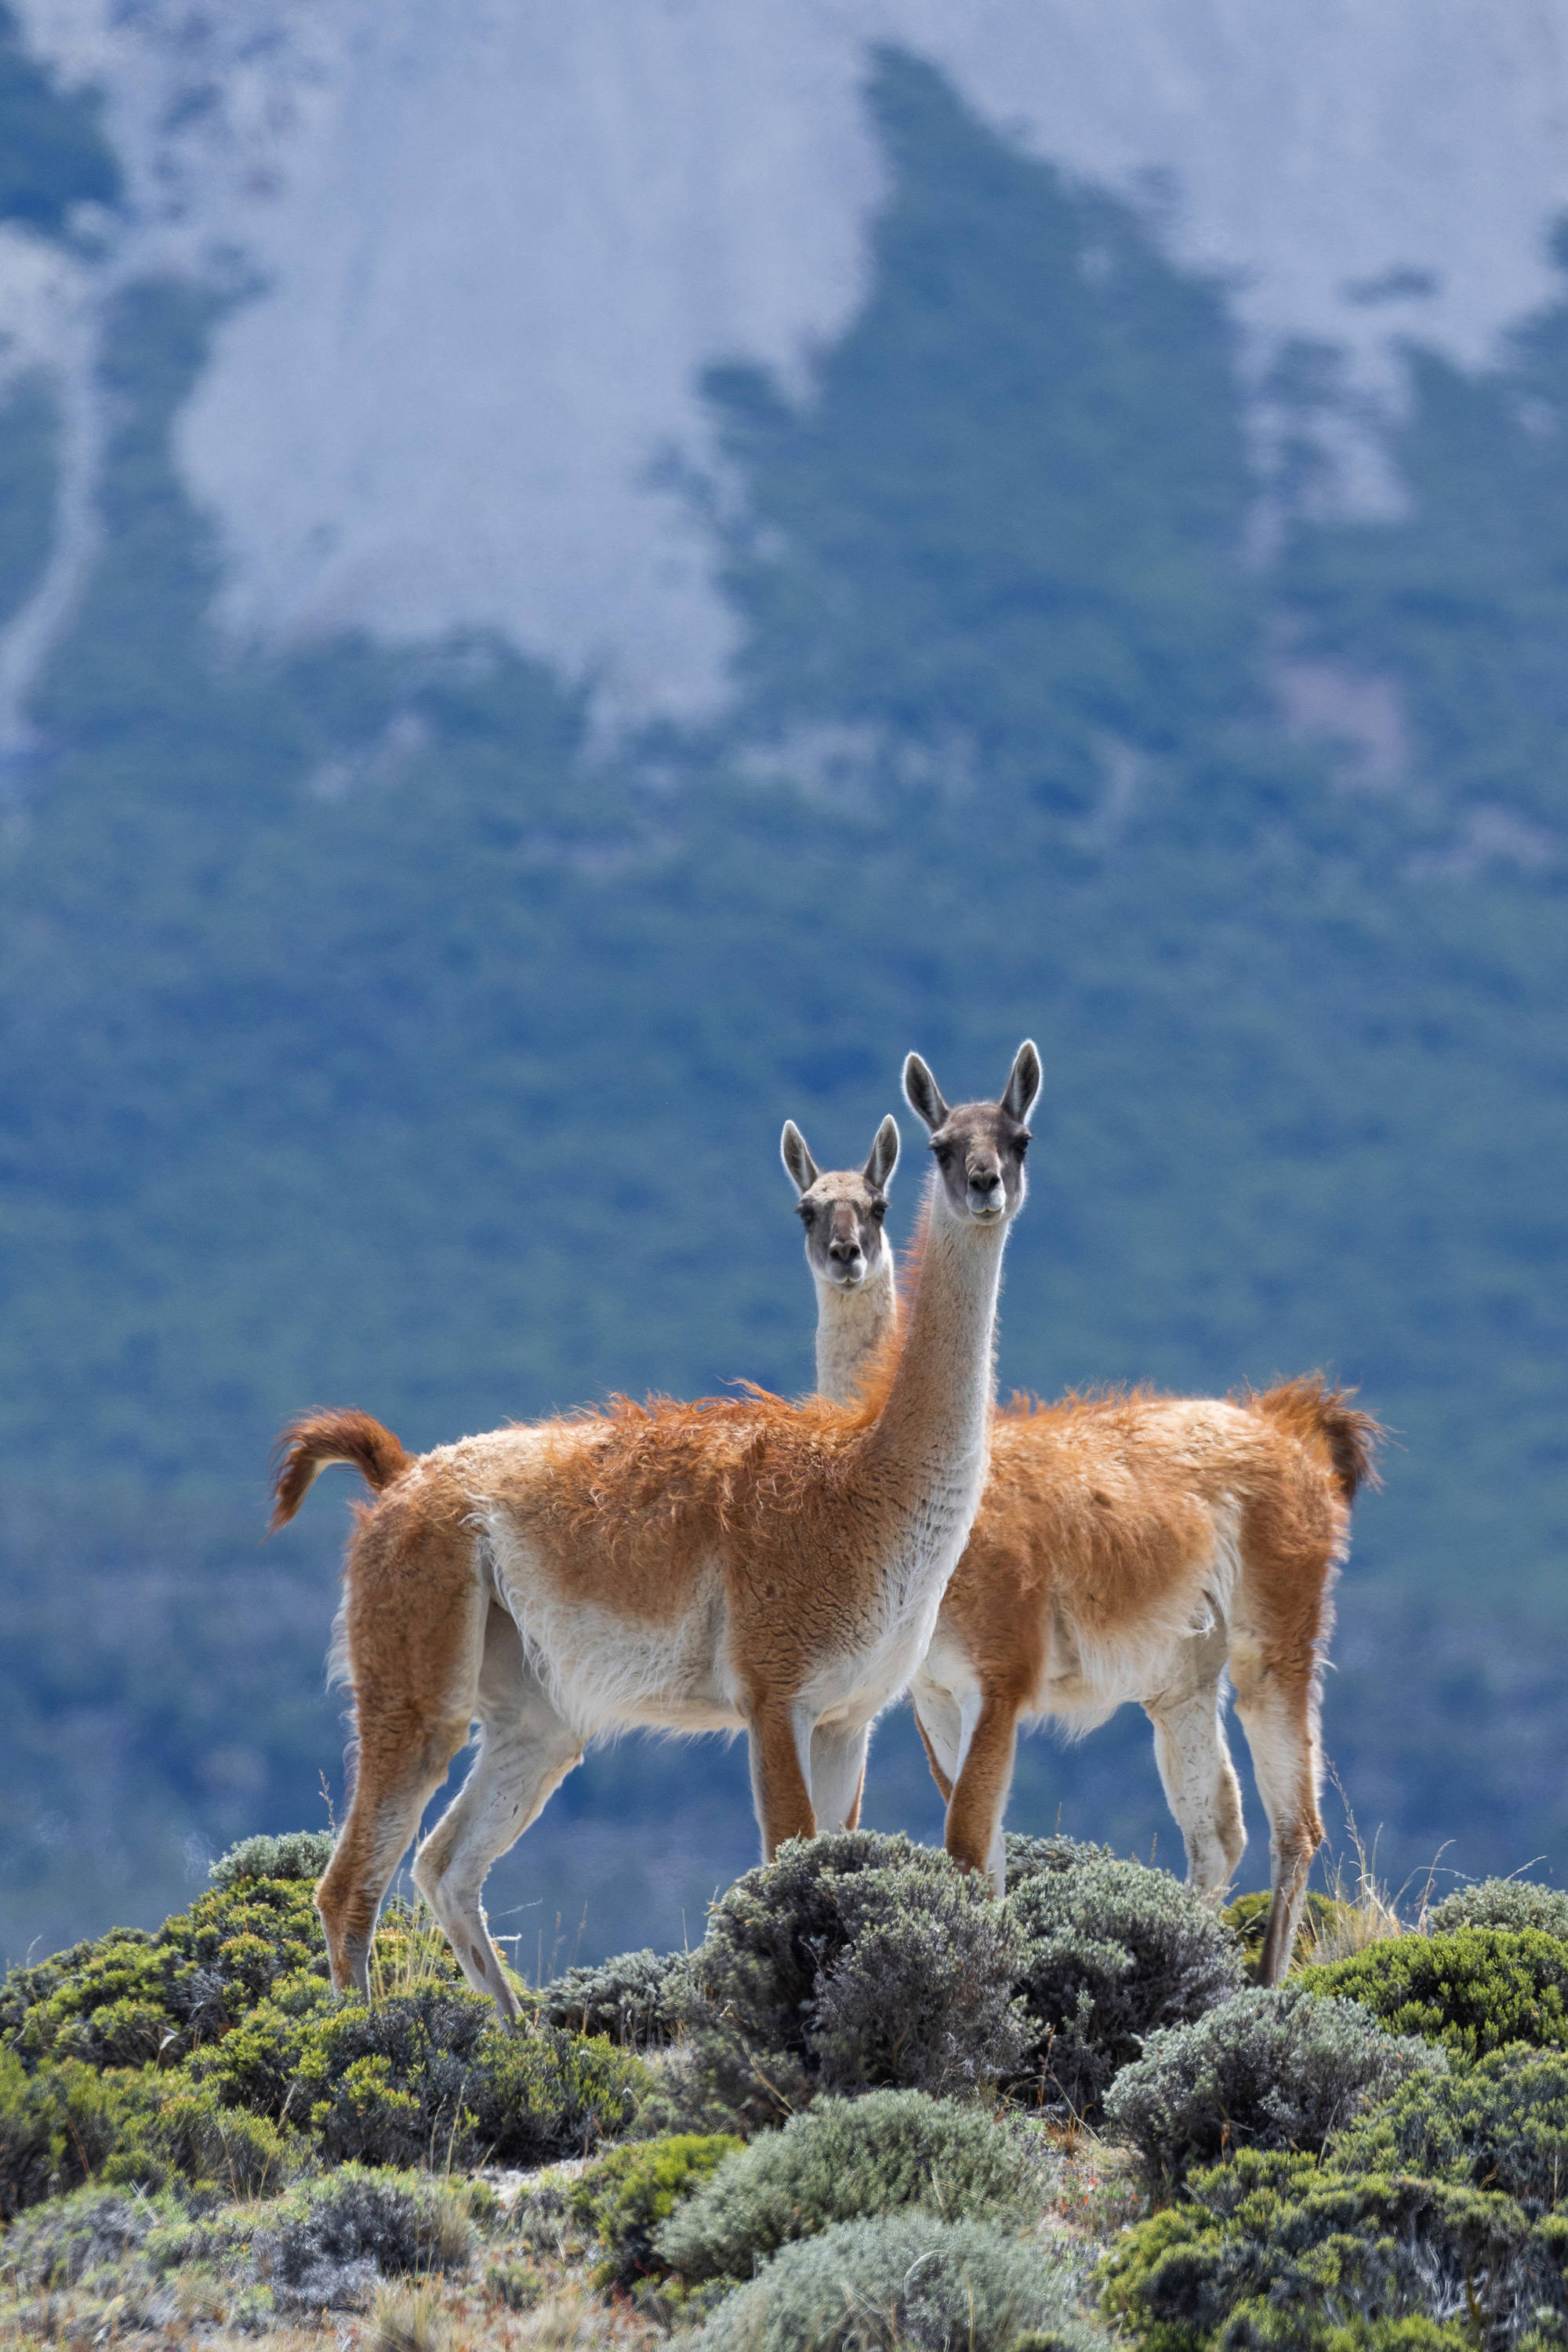 guanacos in their natural habitat in patagonia